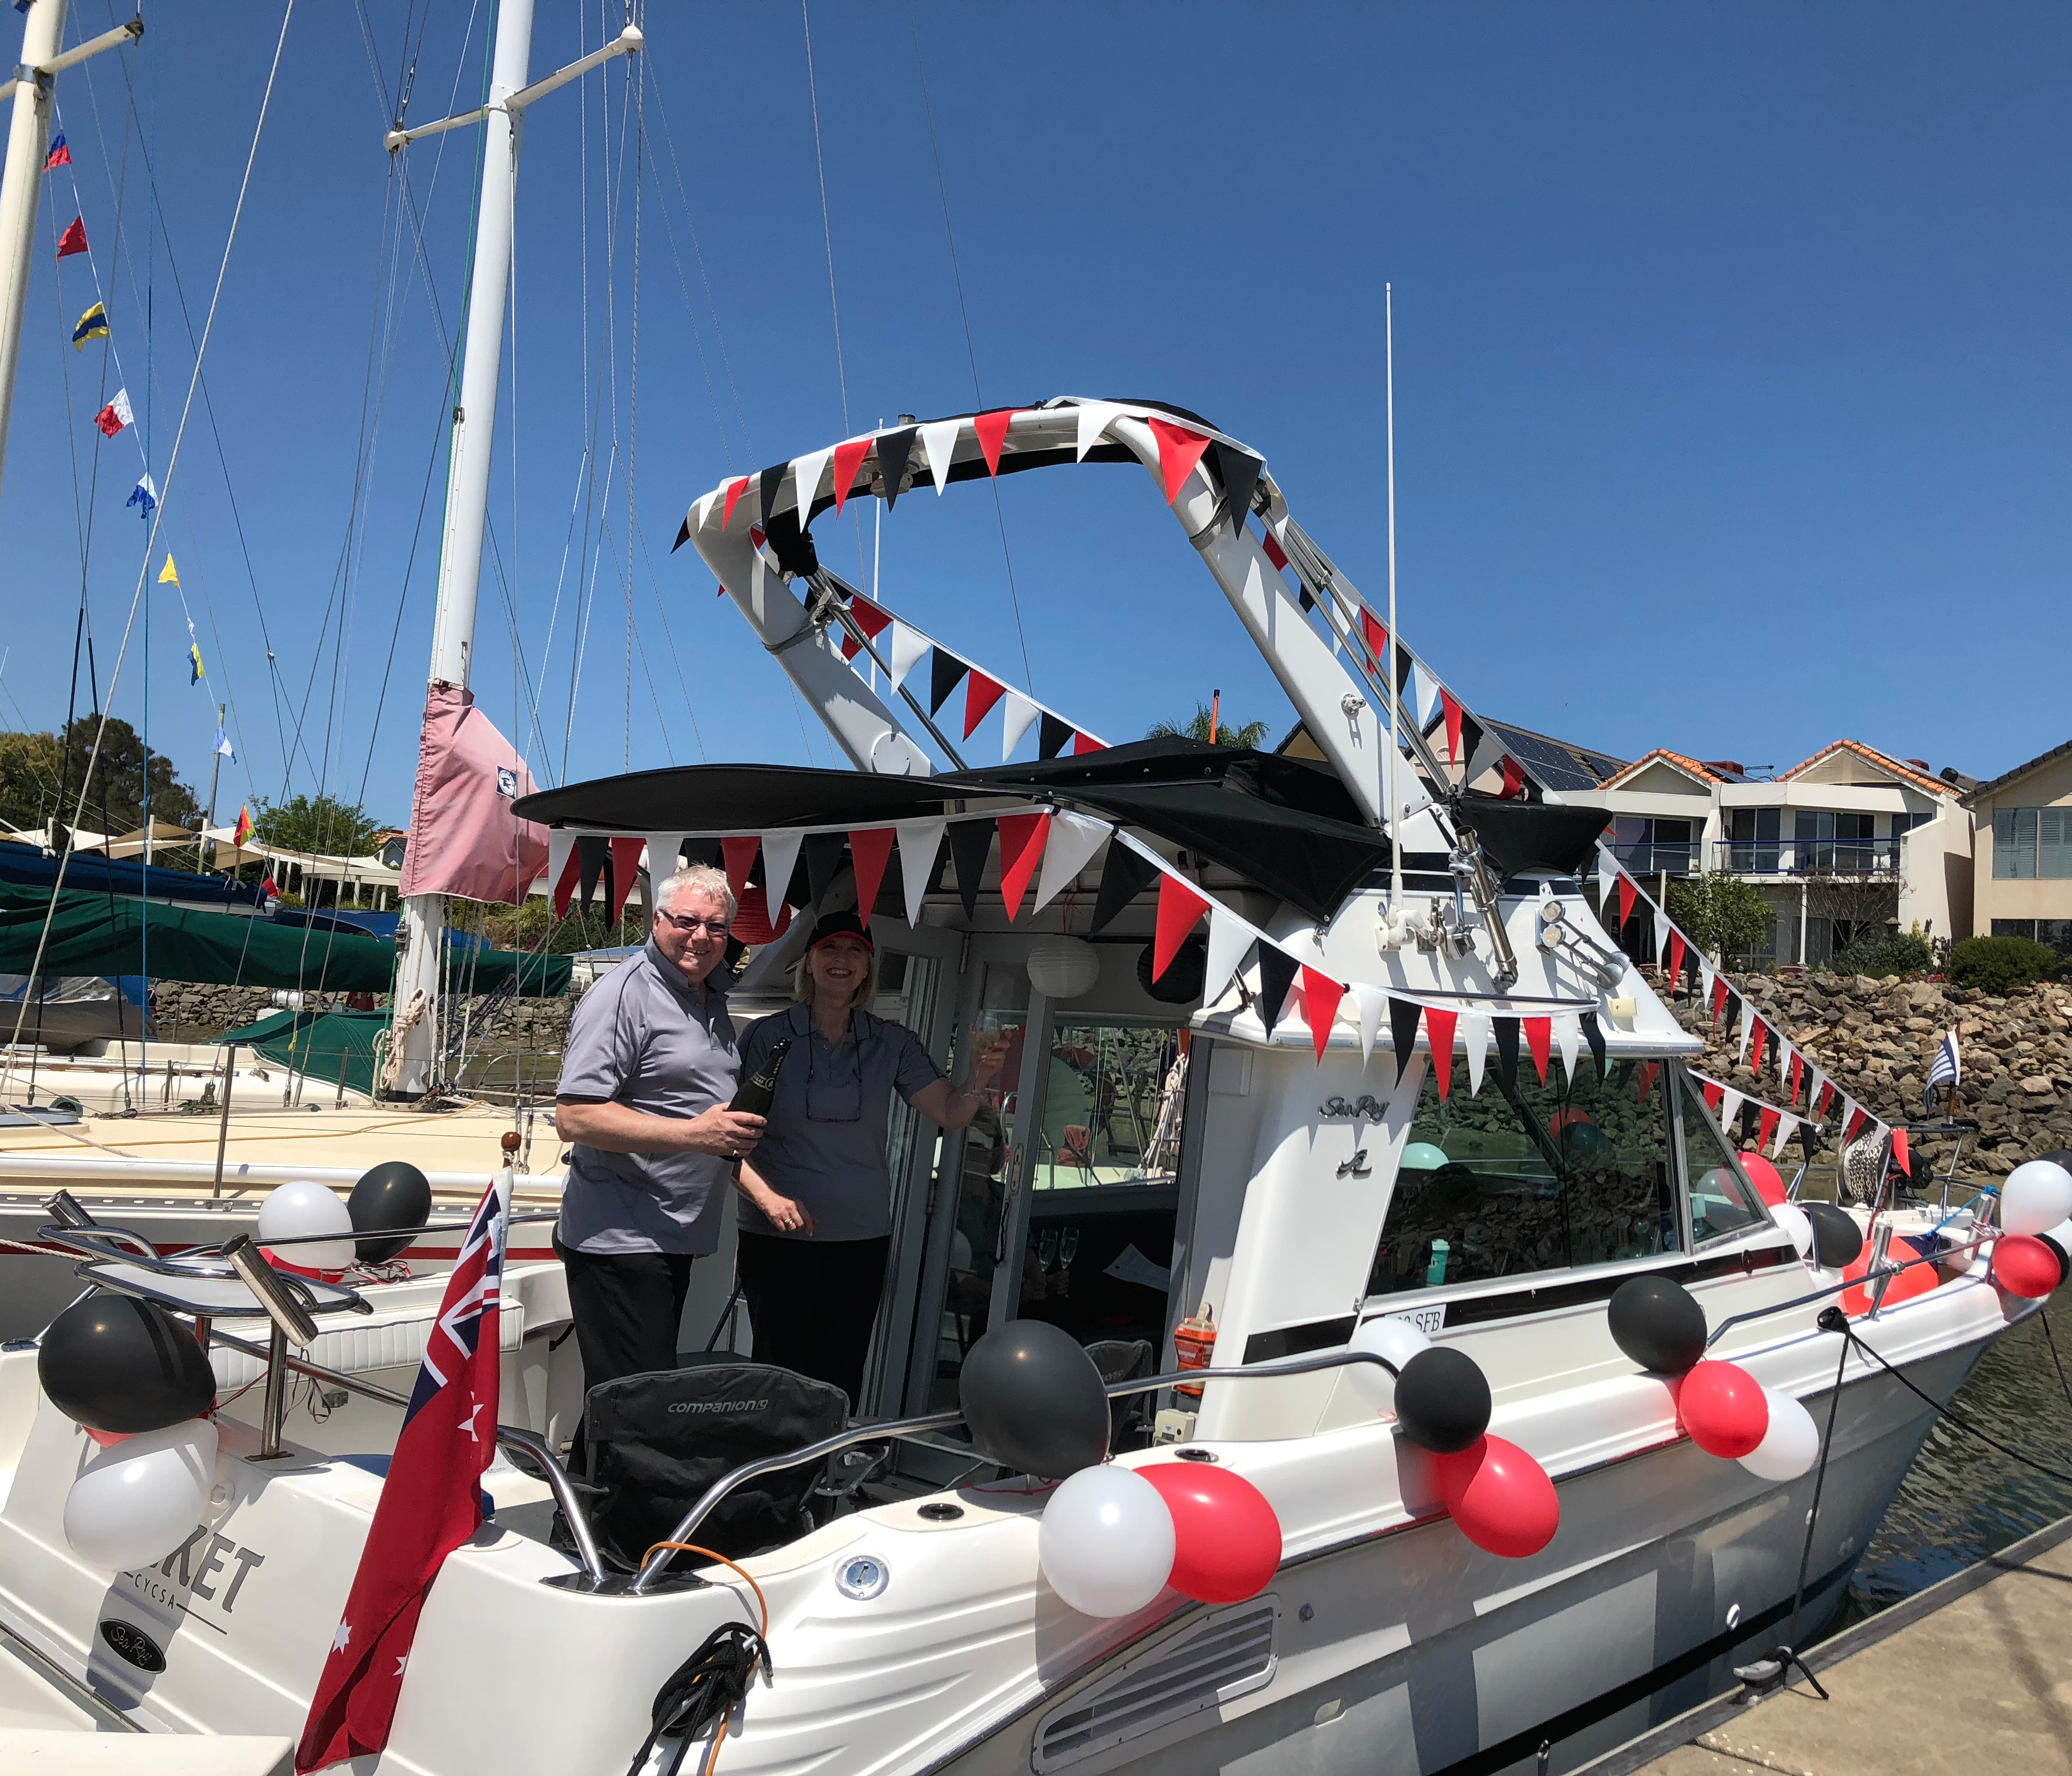  Cruising Yacht Club of SA 2018/2019 Sailing Season Opening Day